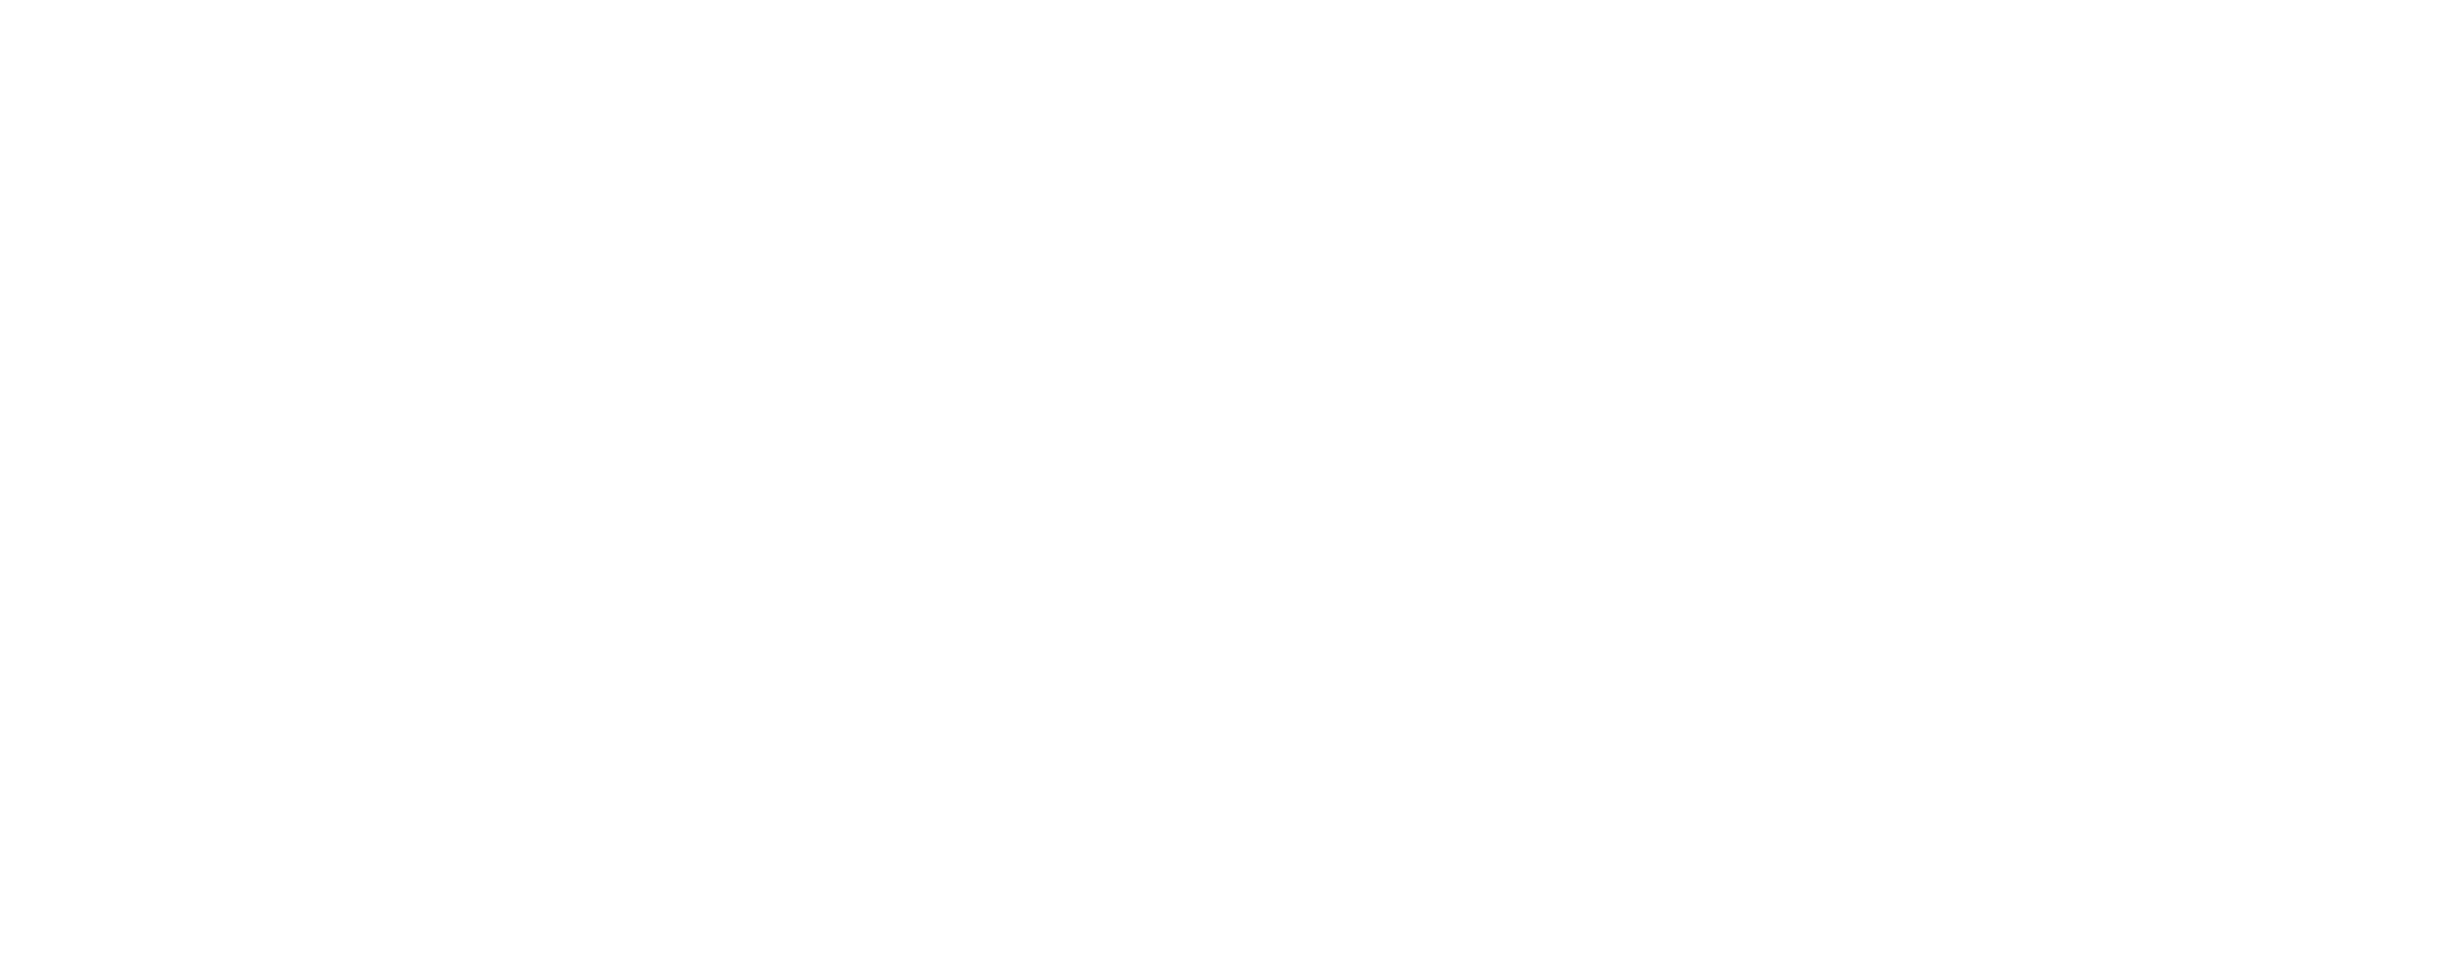 Habibi's Hookah Lounge